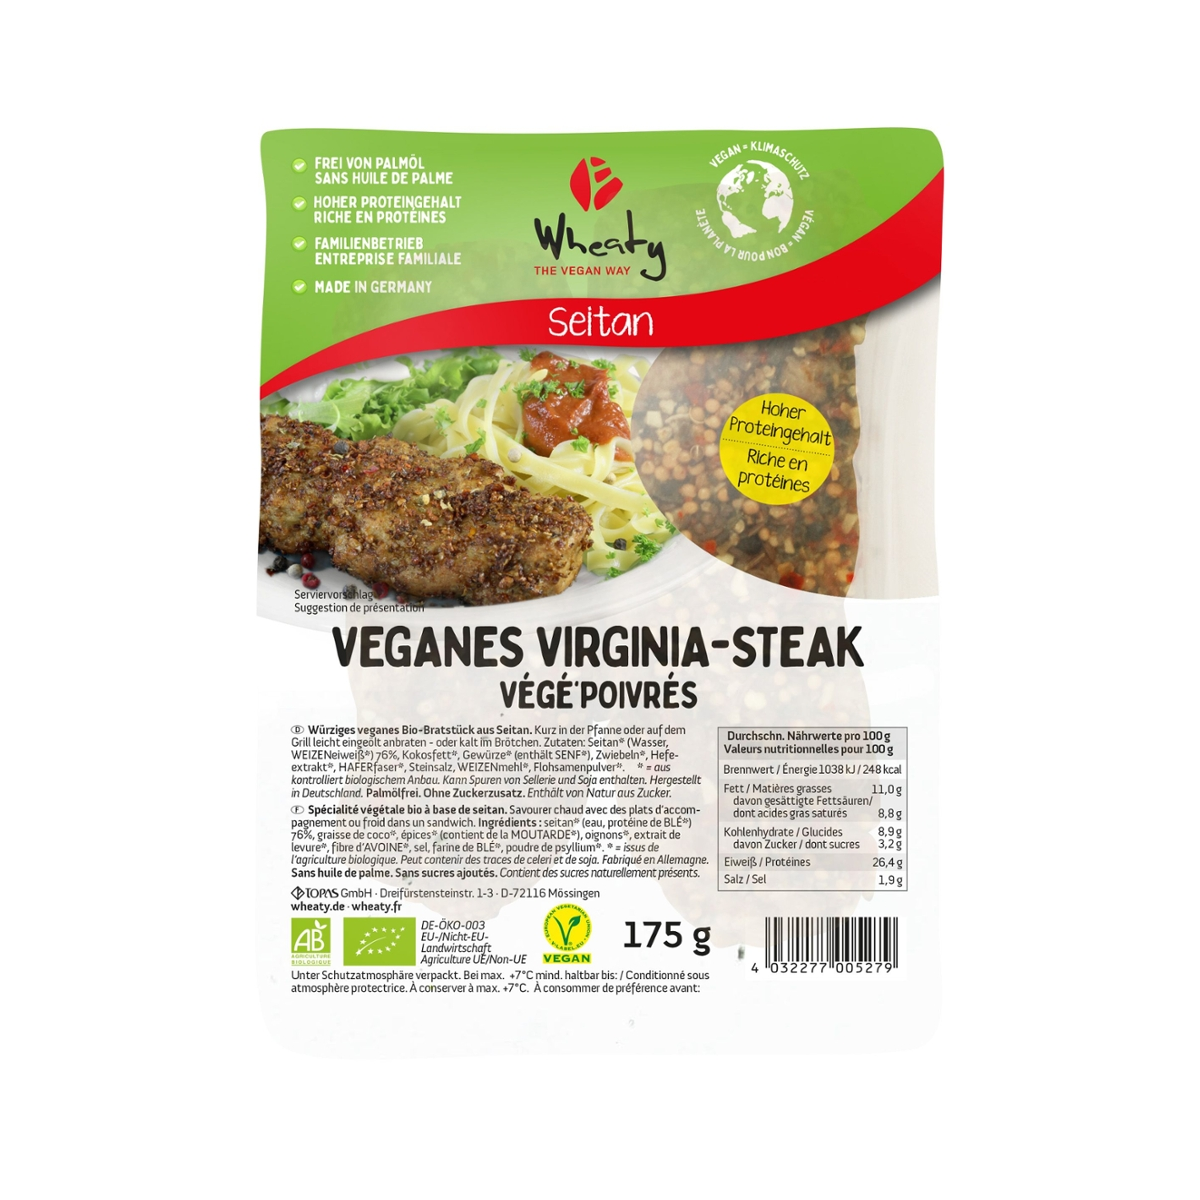 Veganes Virginia Steak